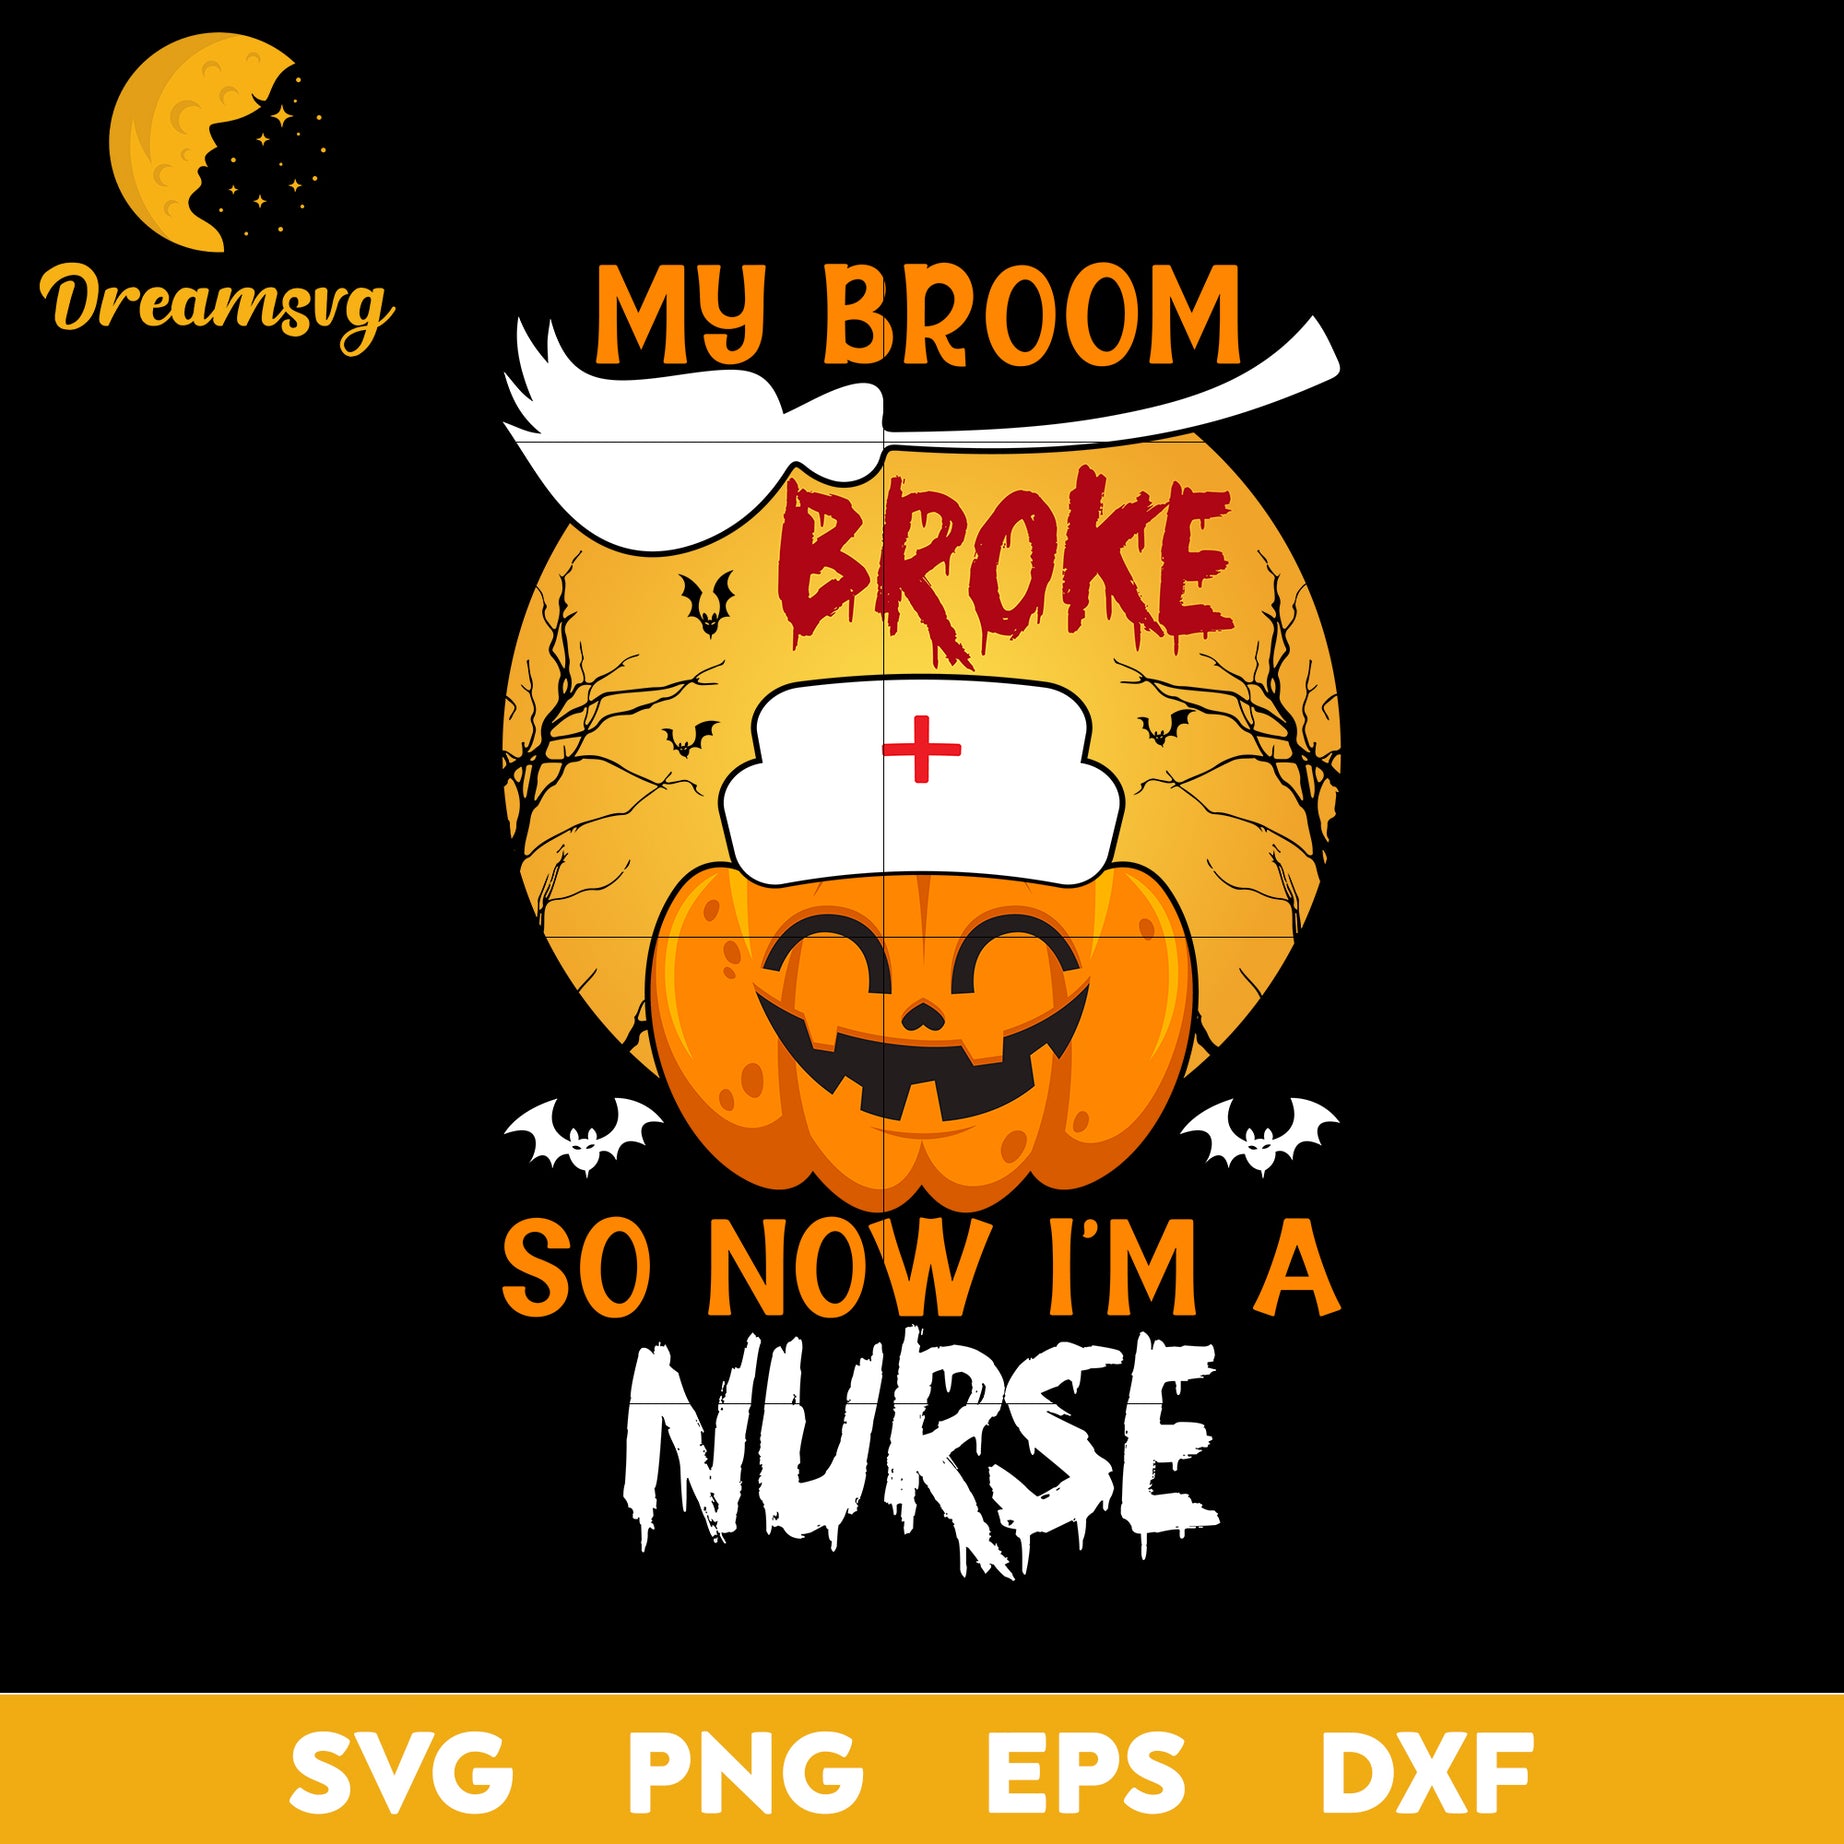 My Broom Broke So Now I'm A Nurse  svg, Halloween svg, png, dxf, eps digital file.